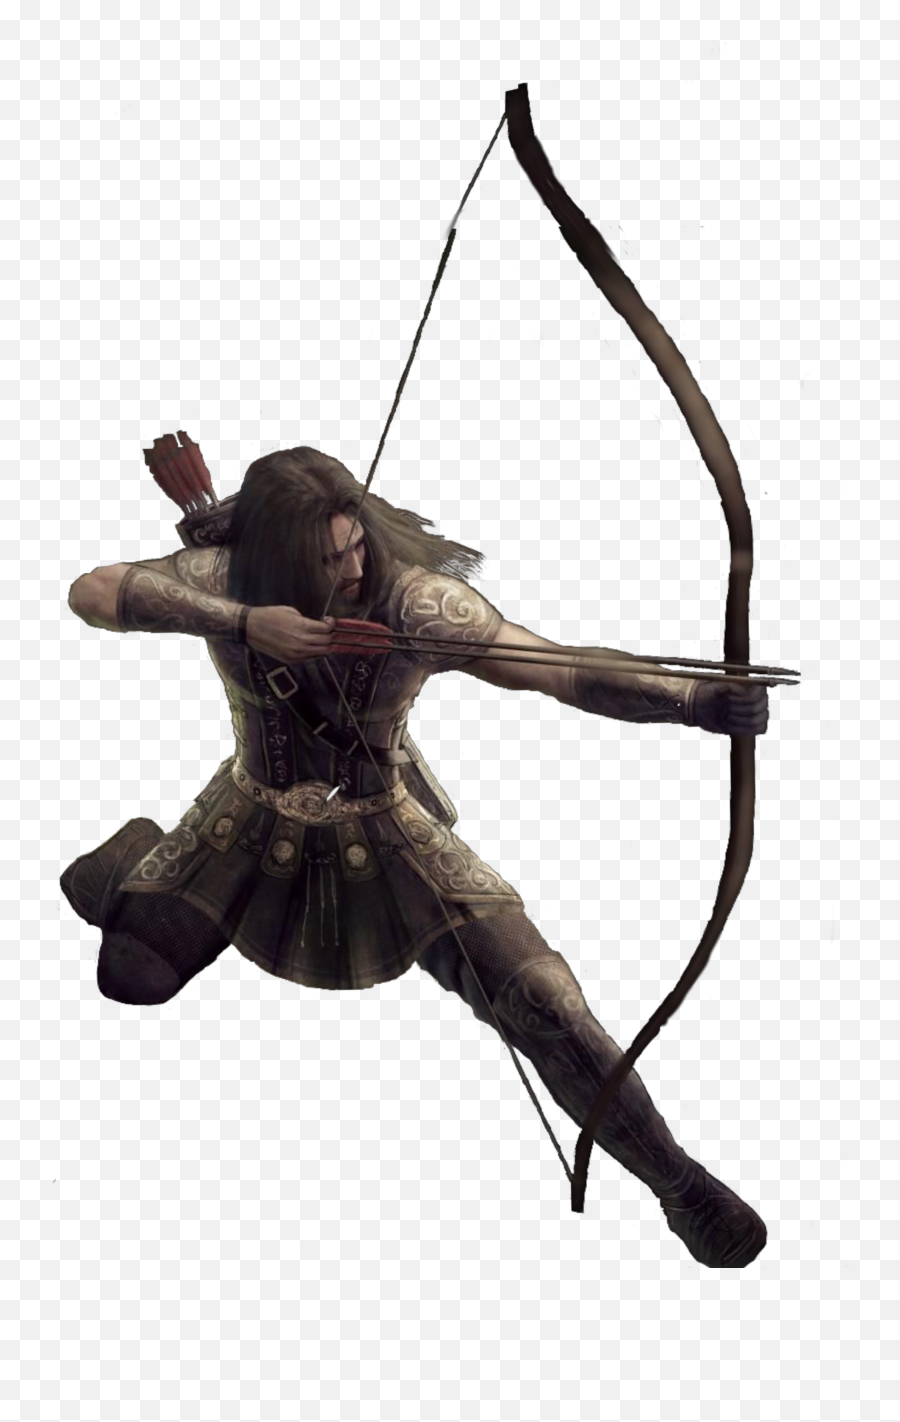 Warrior Archery Fantasy Freetoedit - Target Archery Emoji,Archery Emoji